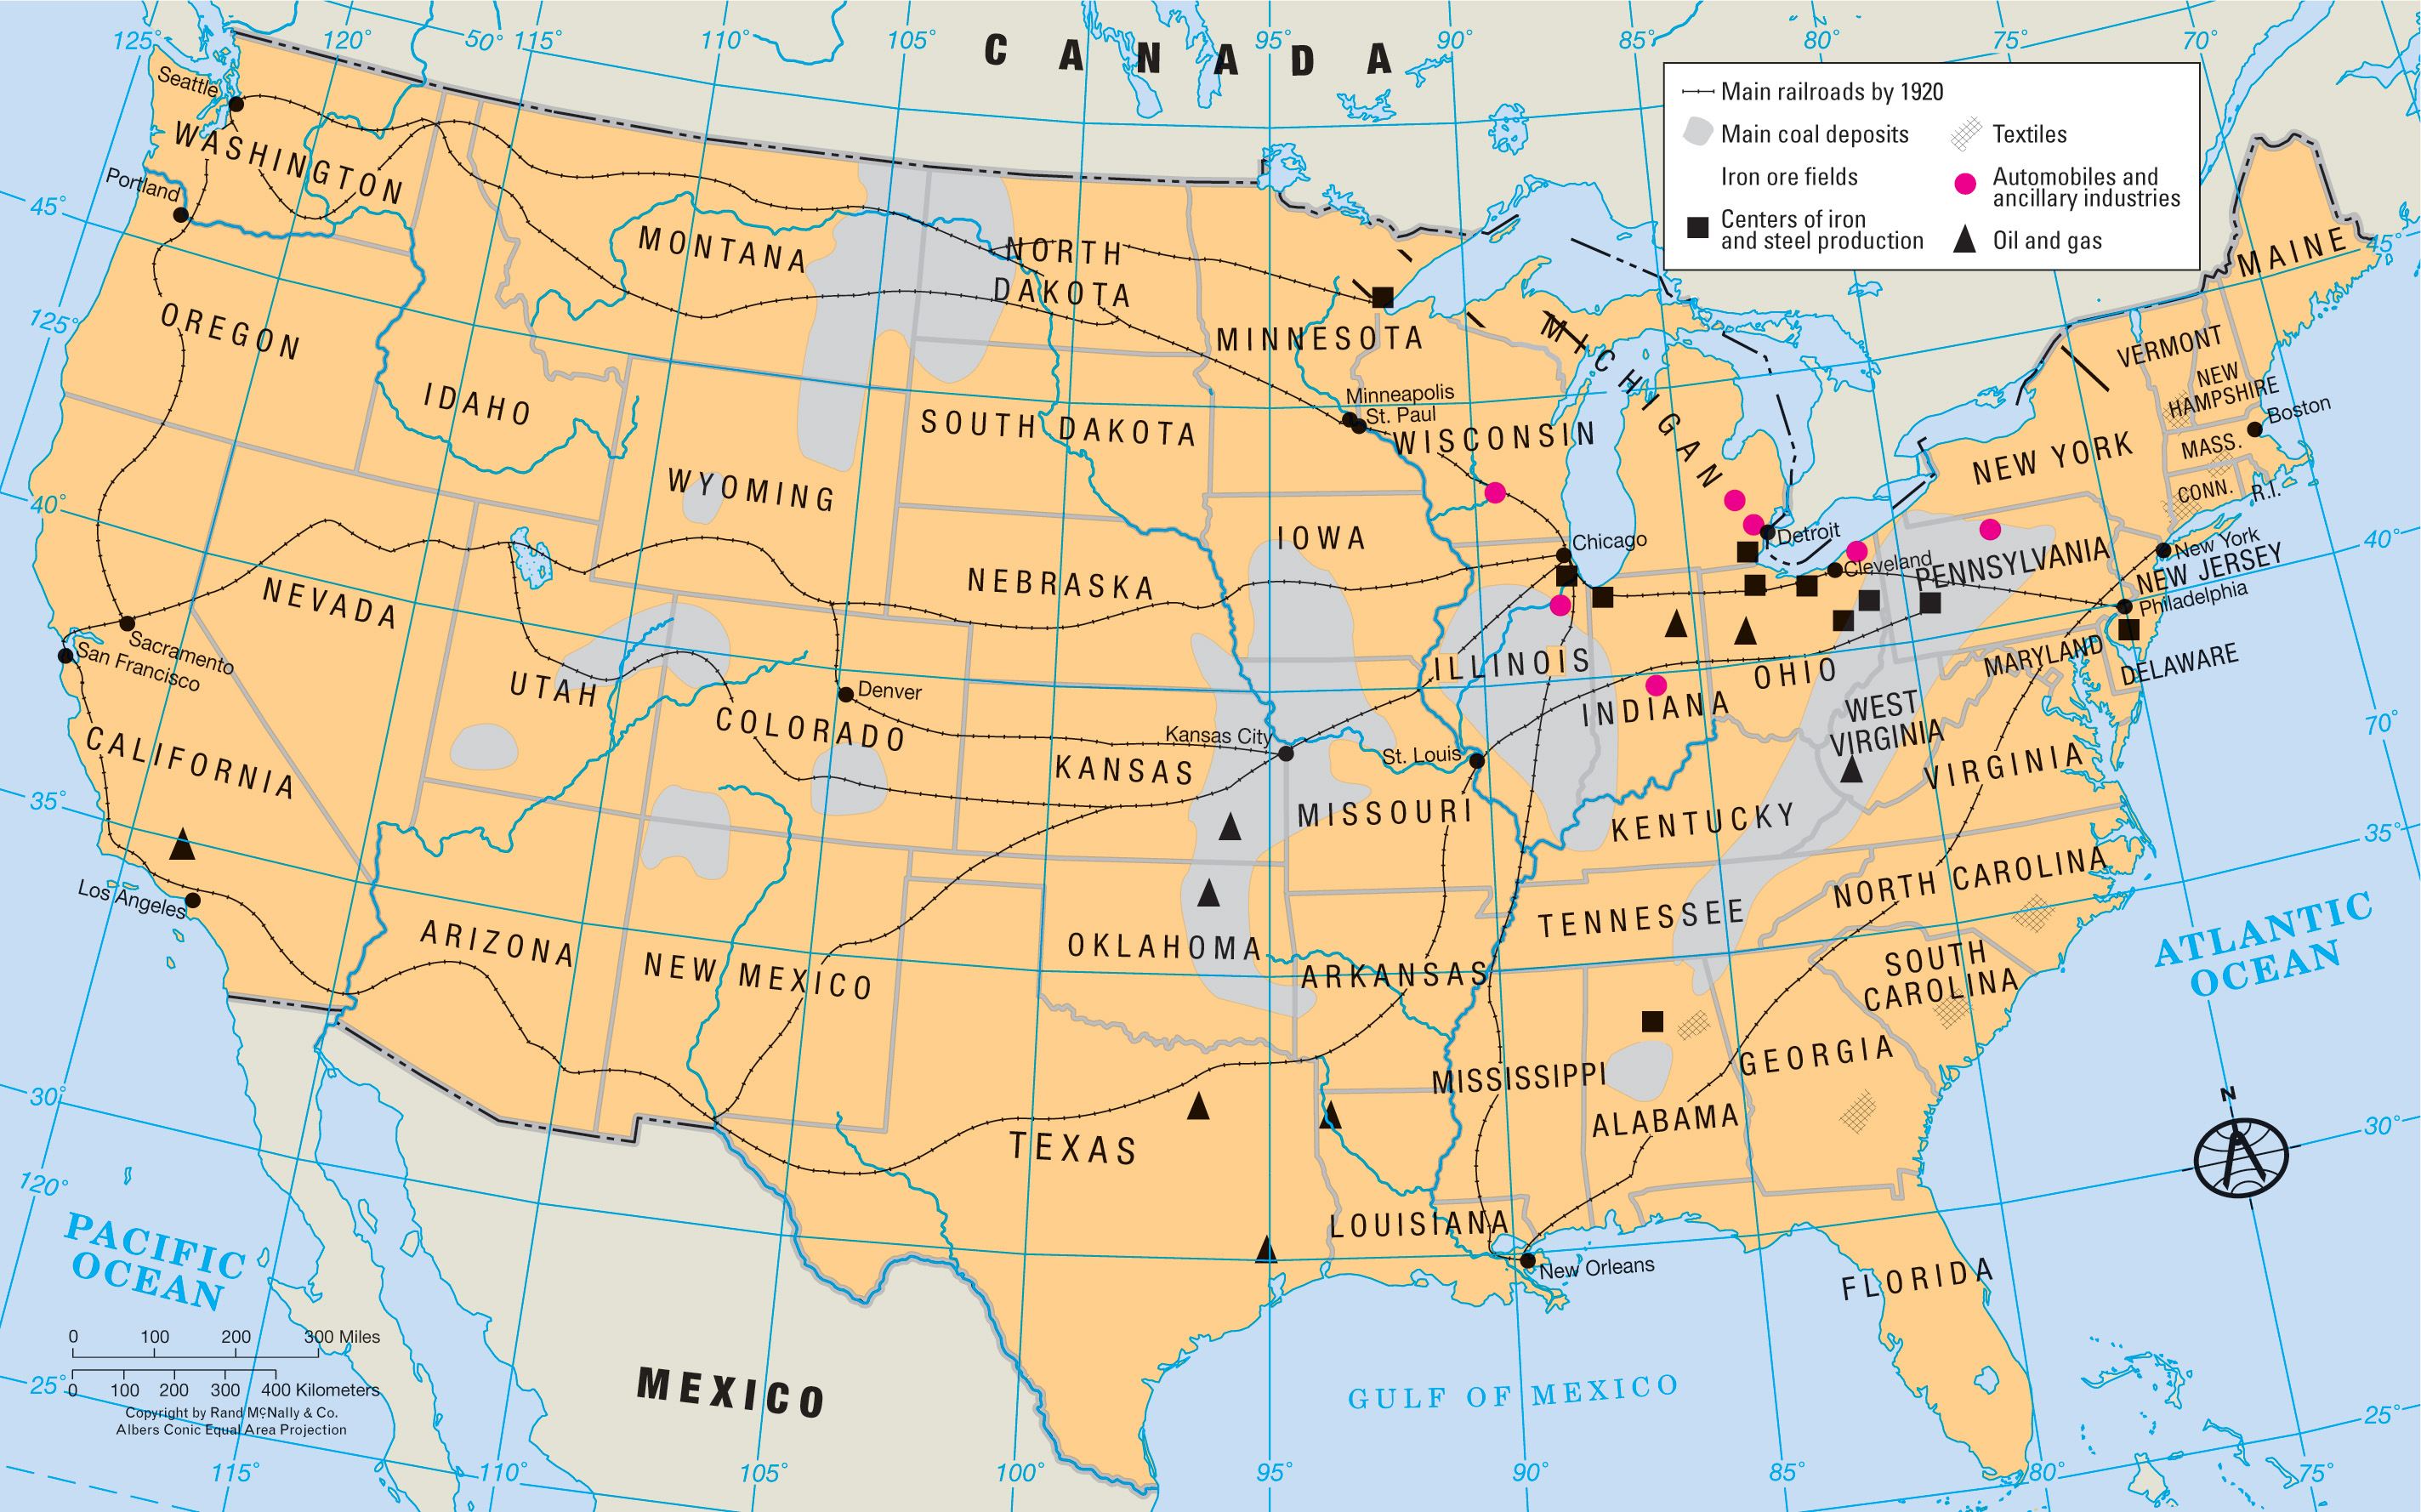 map shows U.S. Industries 1920, railroads, oil, textiles, etc.